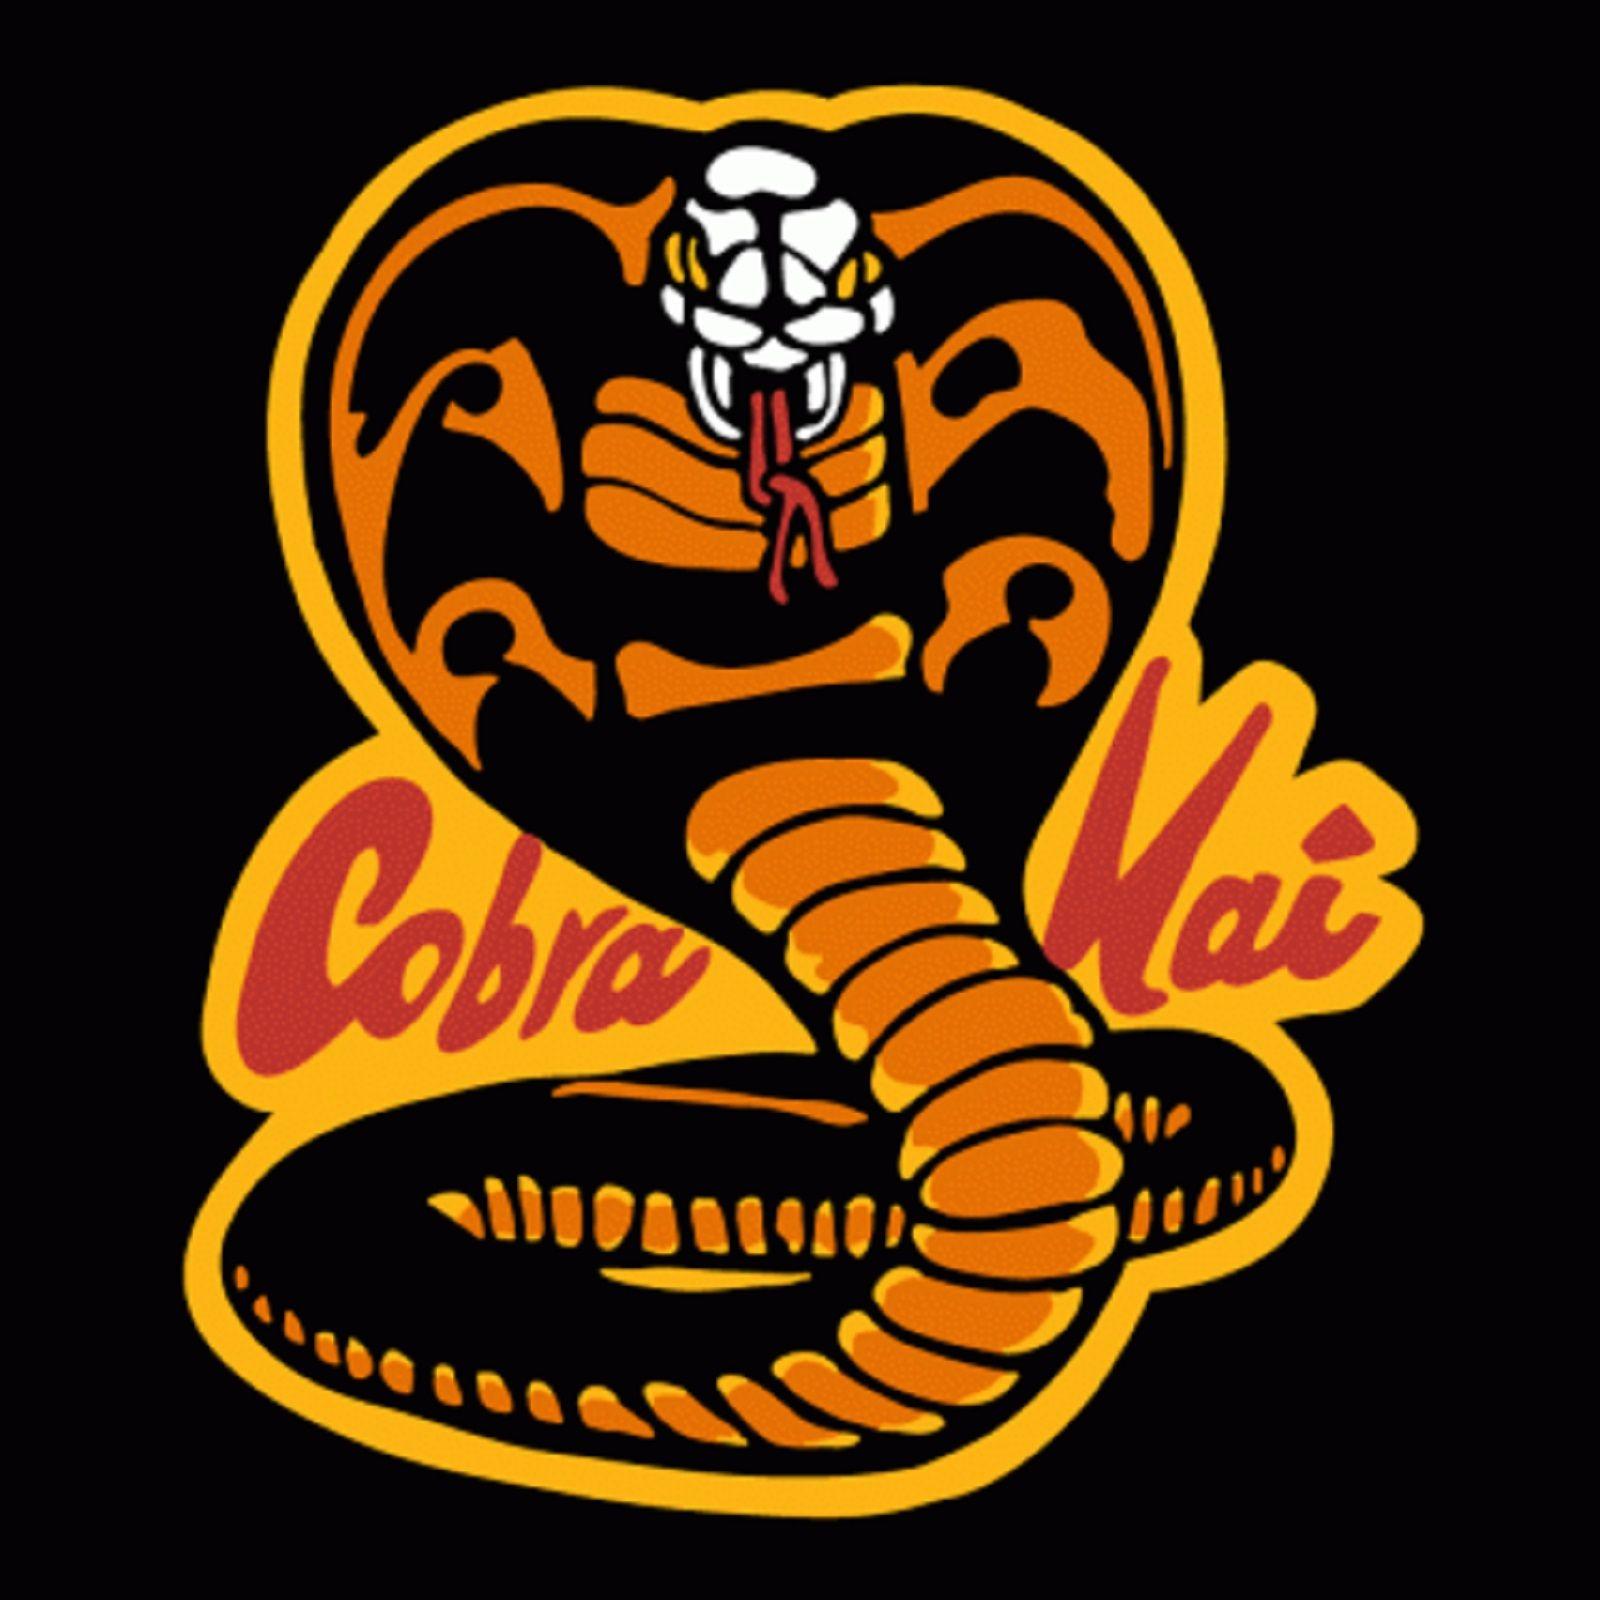 Cobra Kai Logo - pod. fanatic. Podcast: Cobra Kai Cast